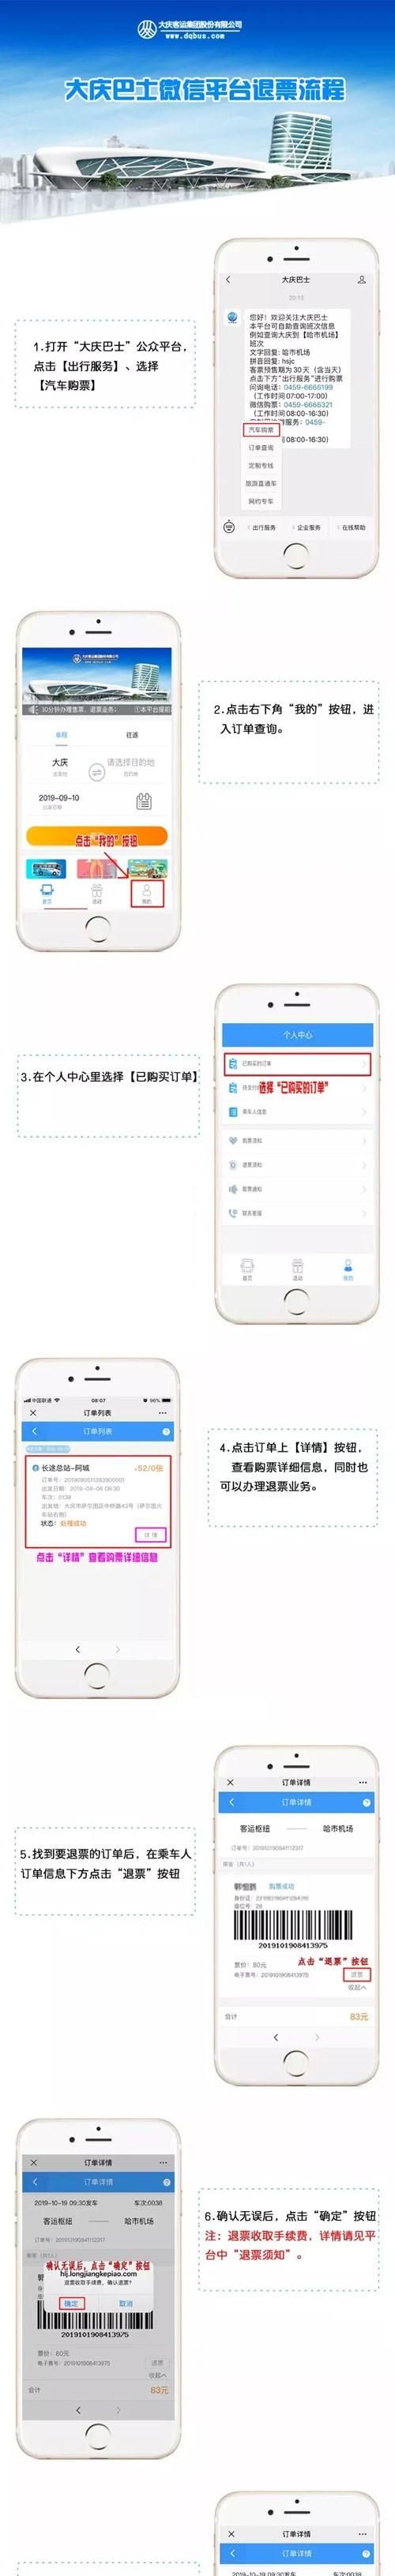 大庆三大客运站微信“购退取”票操作攻略来了